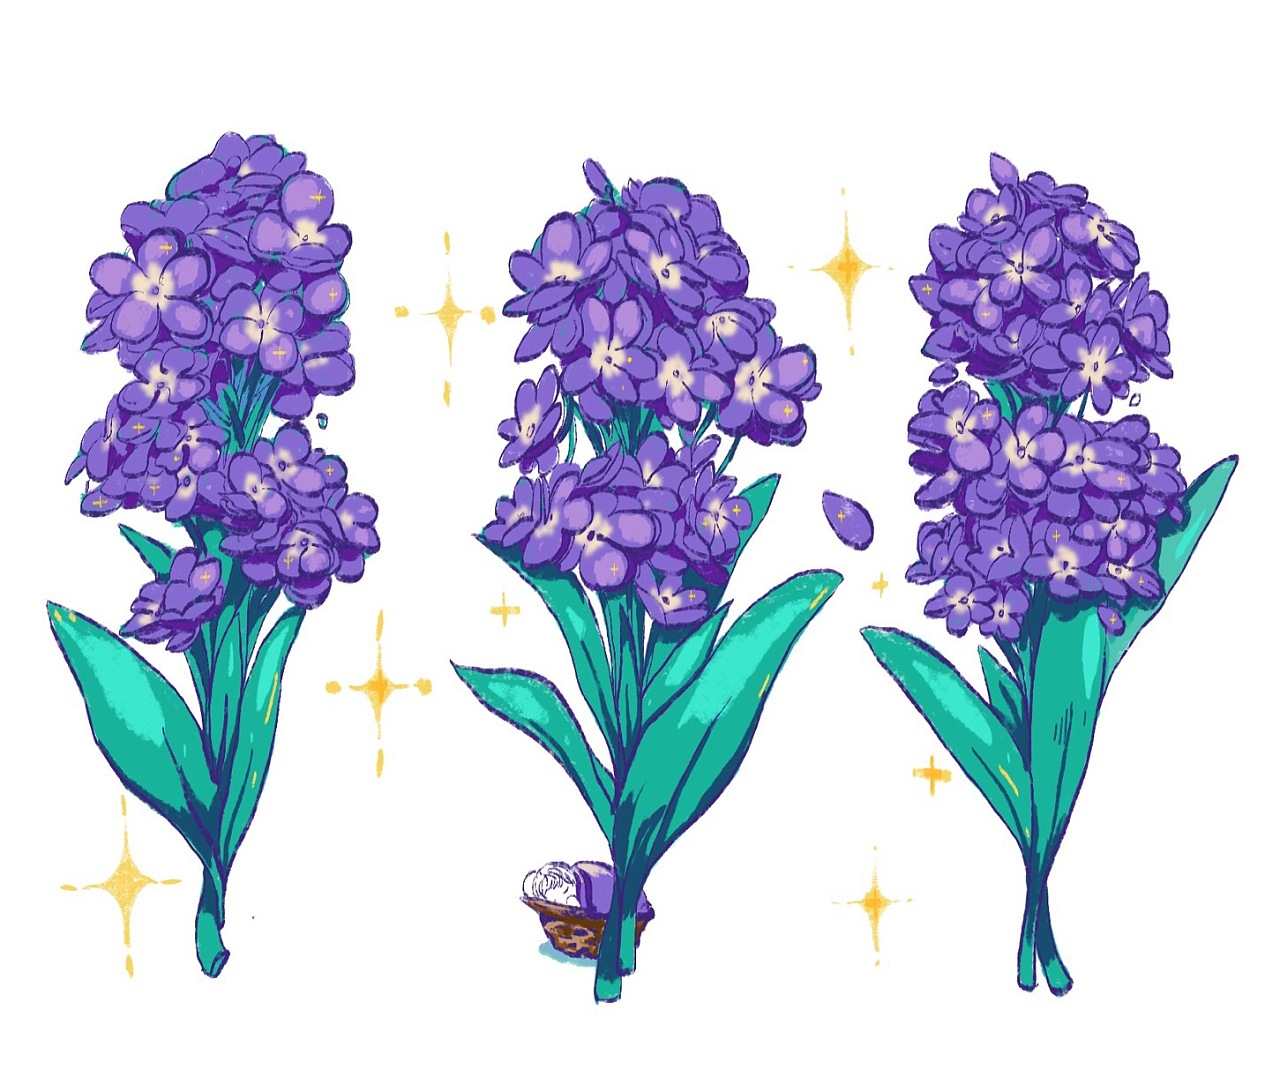 非洲紫罗兰图片_非洲紫罗兰的花朵图片大全 - 花卉网